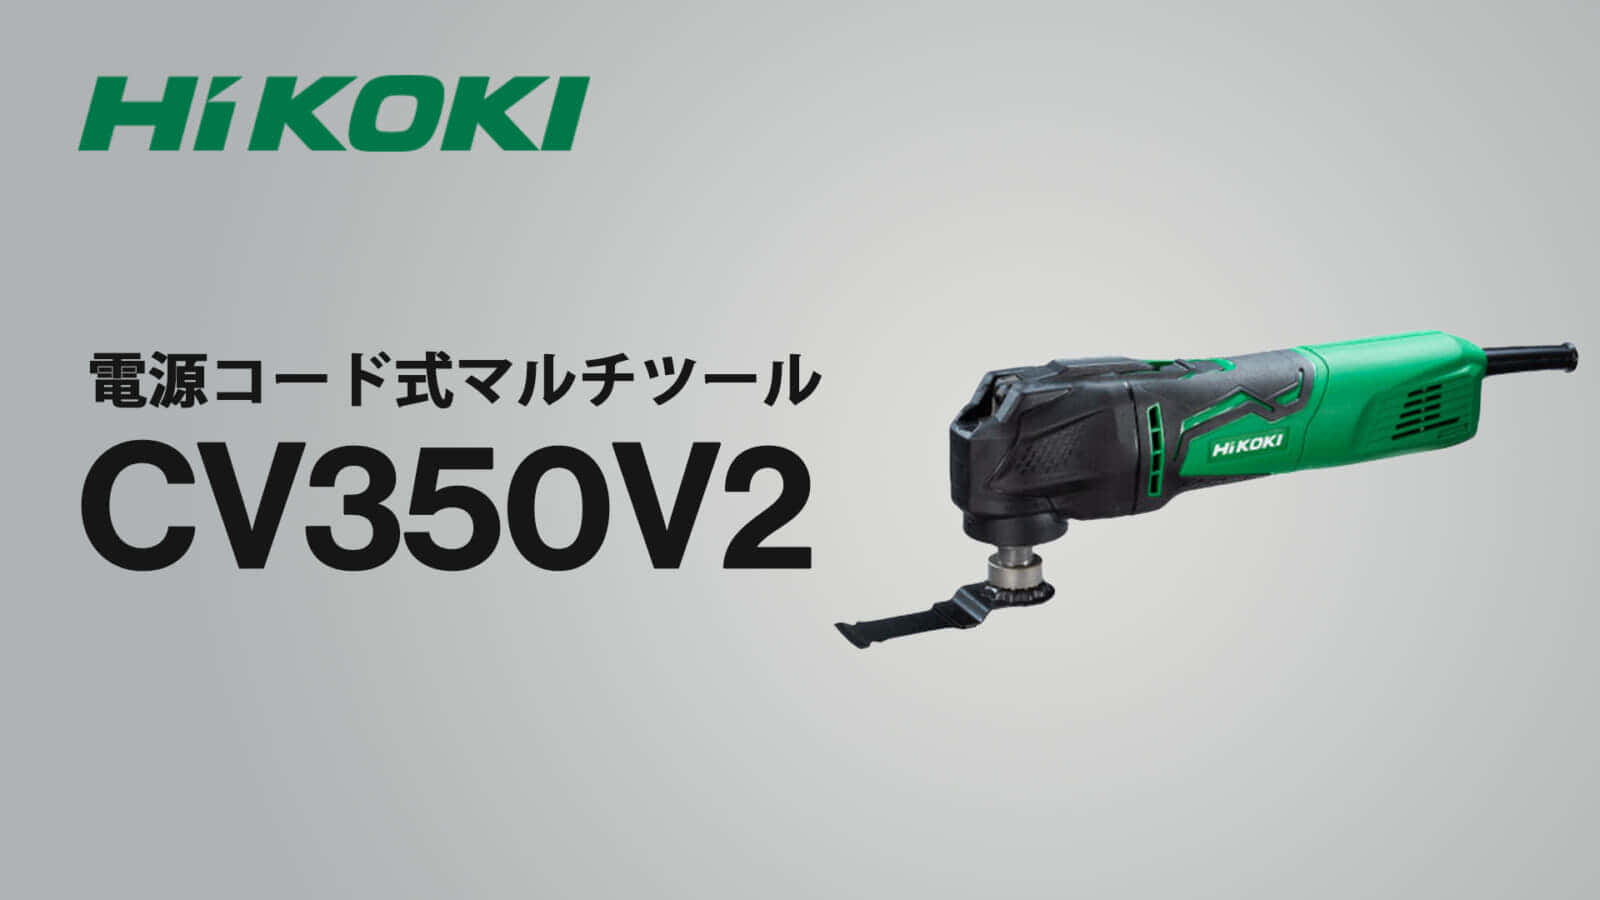 HiKOKI CV350V2 マルチツールを発売、先端構造変更のマイナーチェンジ 